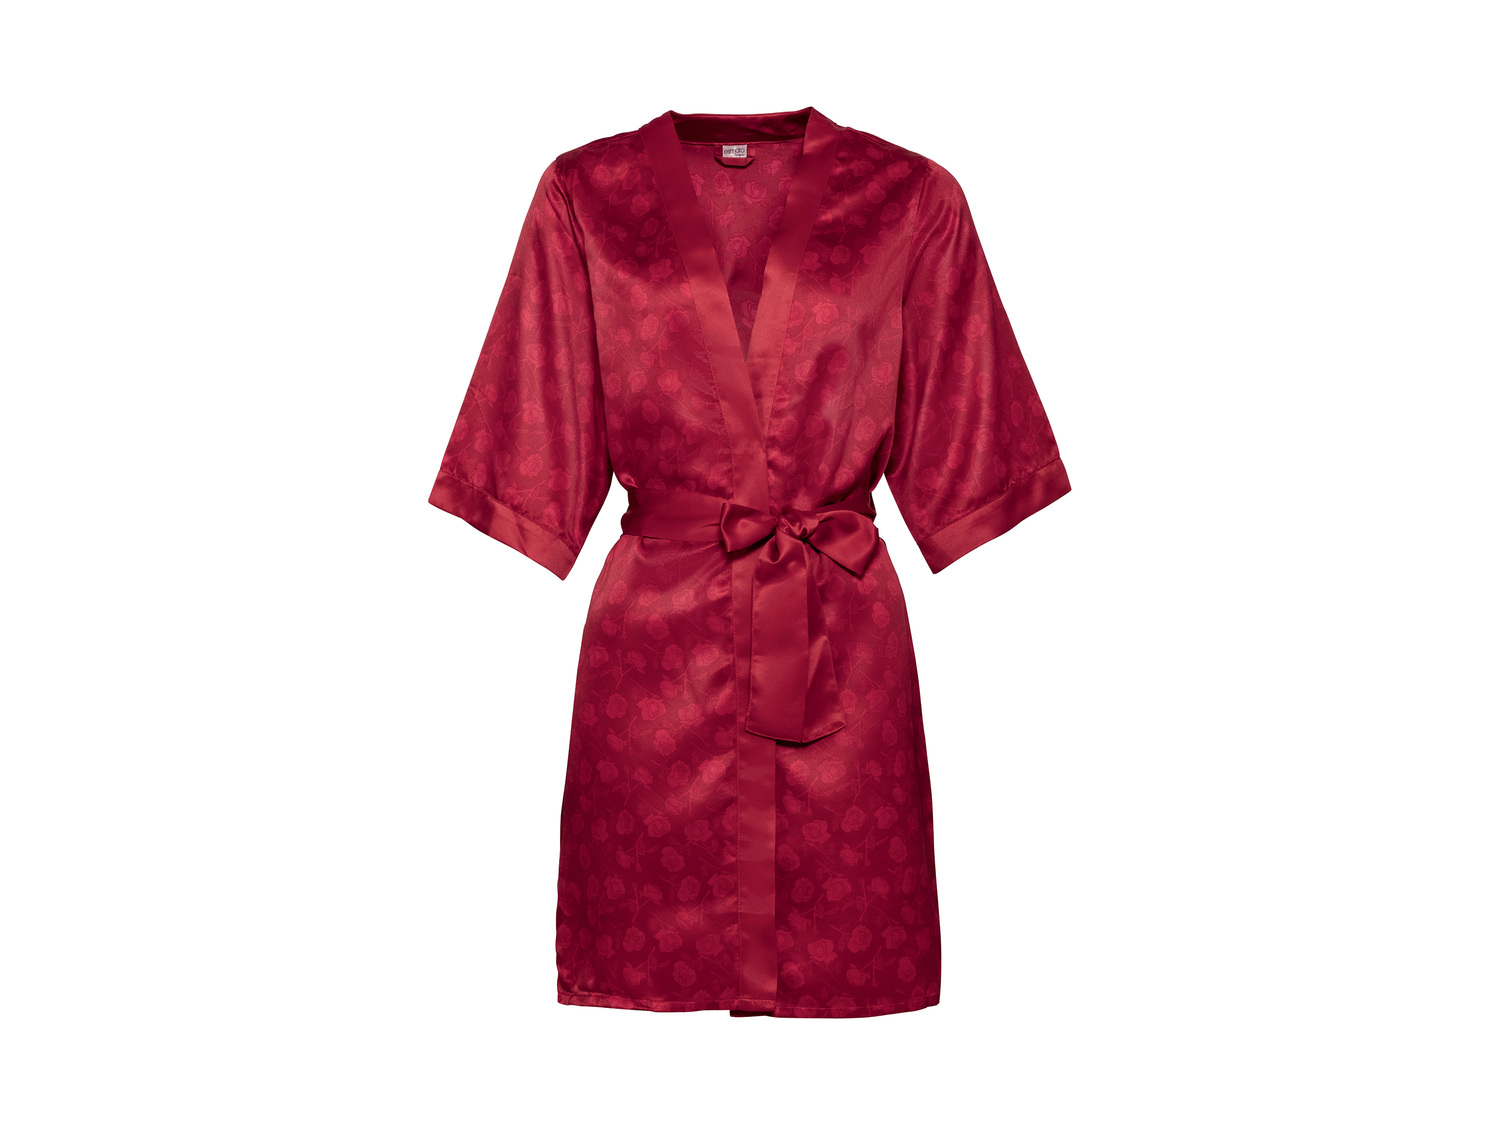 Kimono en satin , le prix 6.99 € 
- Du S au XL selon modèle.
- Ex. 100 % polyester
- ...